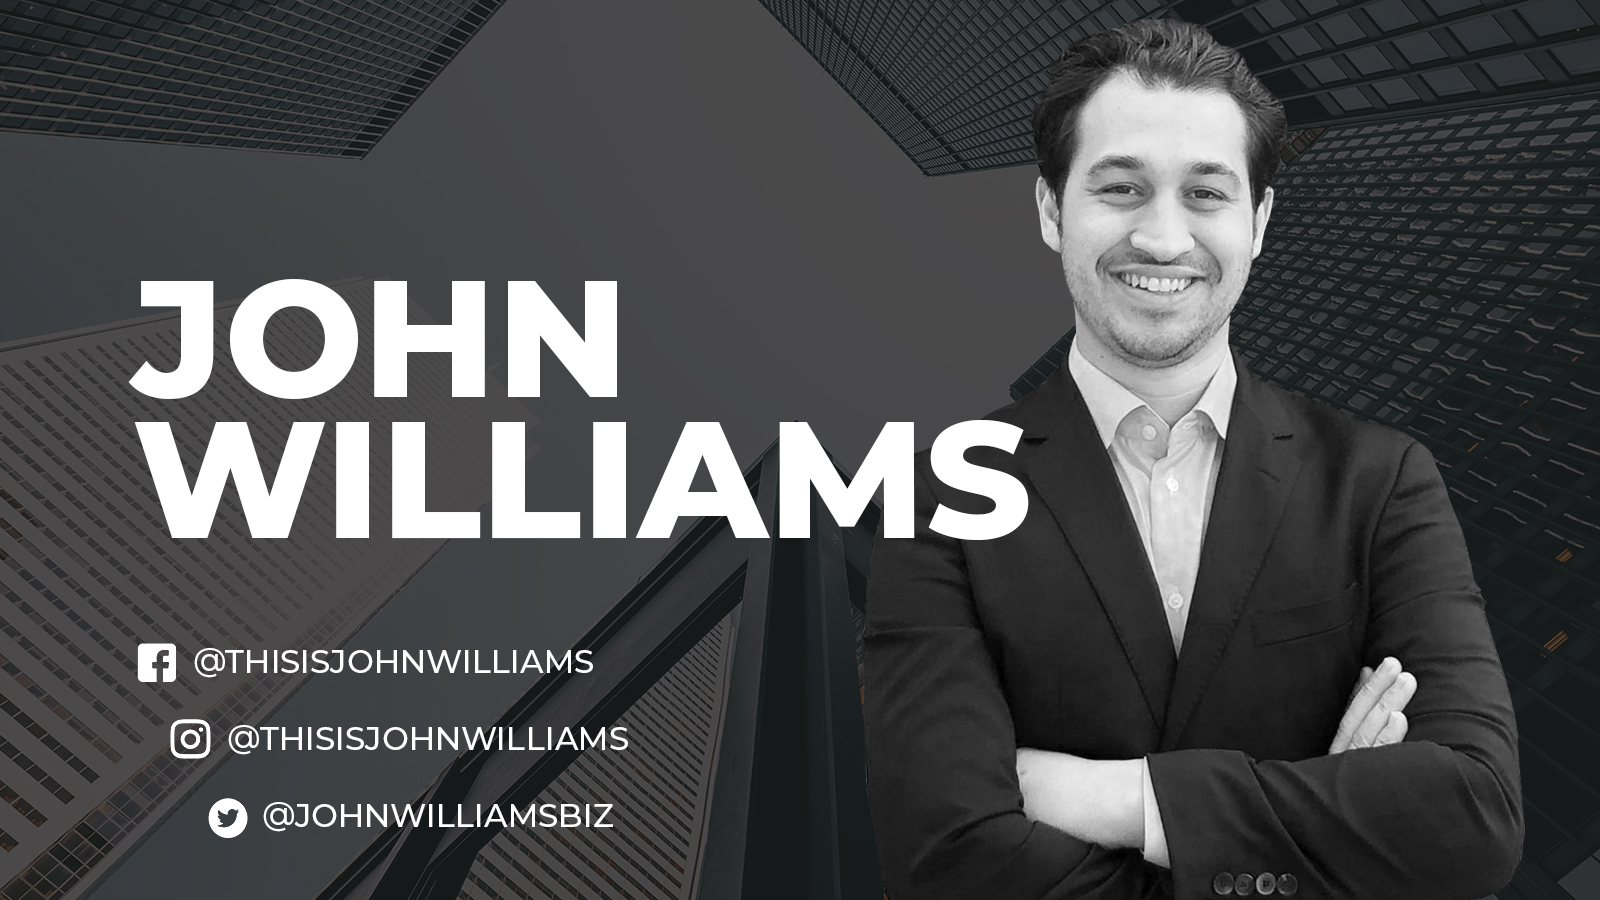 Follow John Williams on Social Media